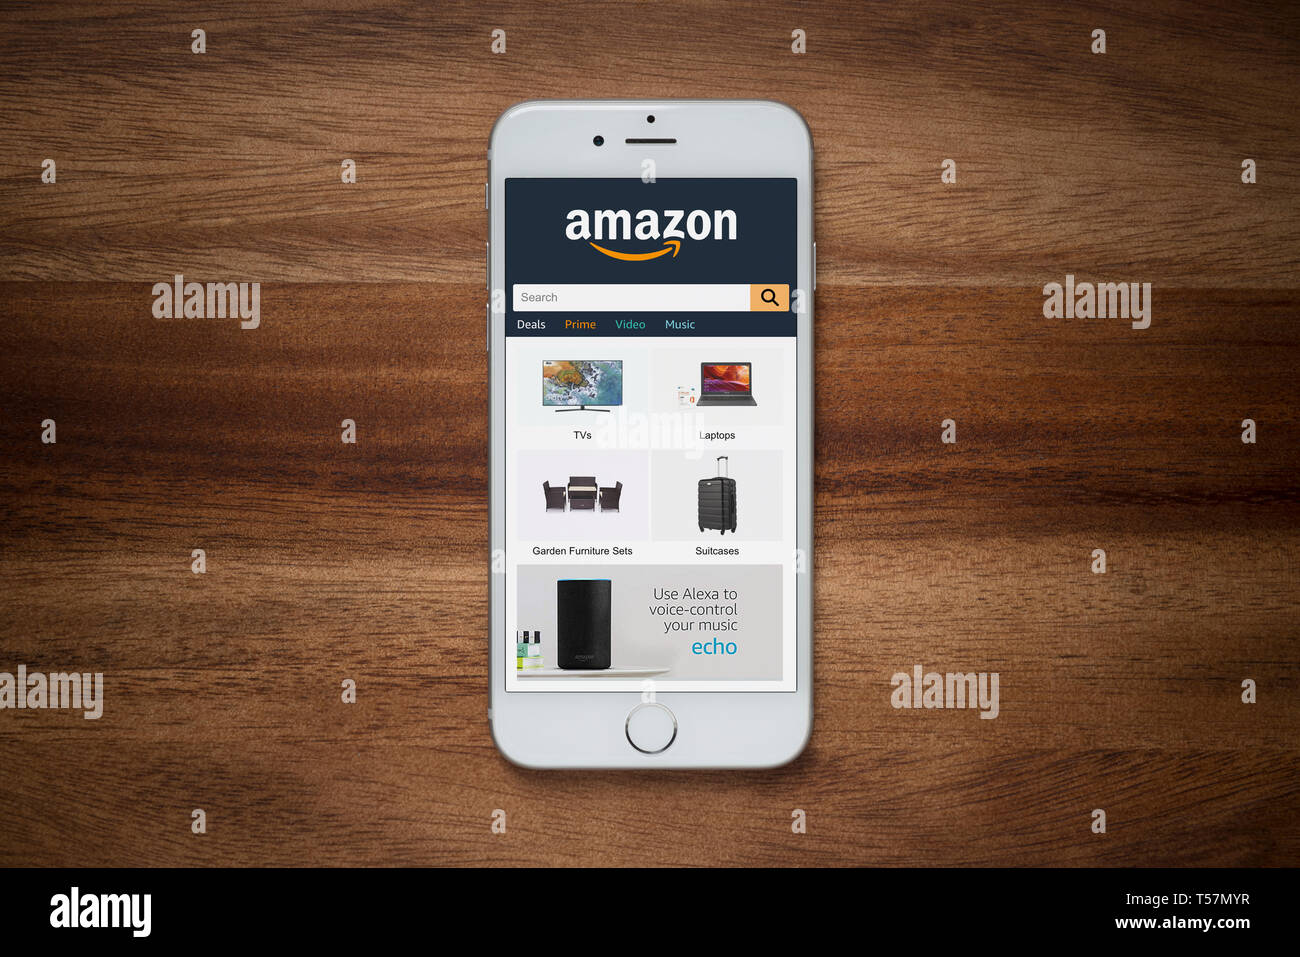 Un iPhone que muestra el sitio web Amazon descansa sobre una mesa de madera normal (uso Editorial solamente). Foto de stock